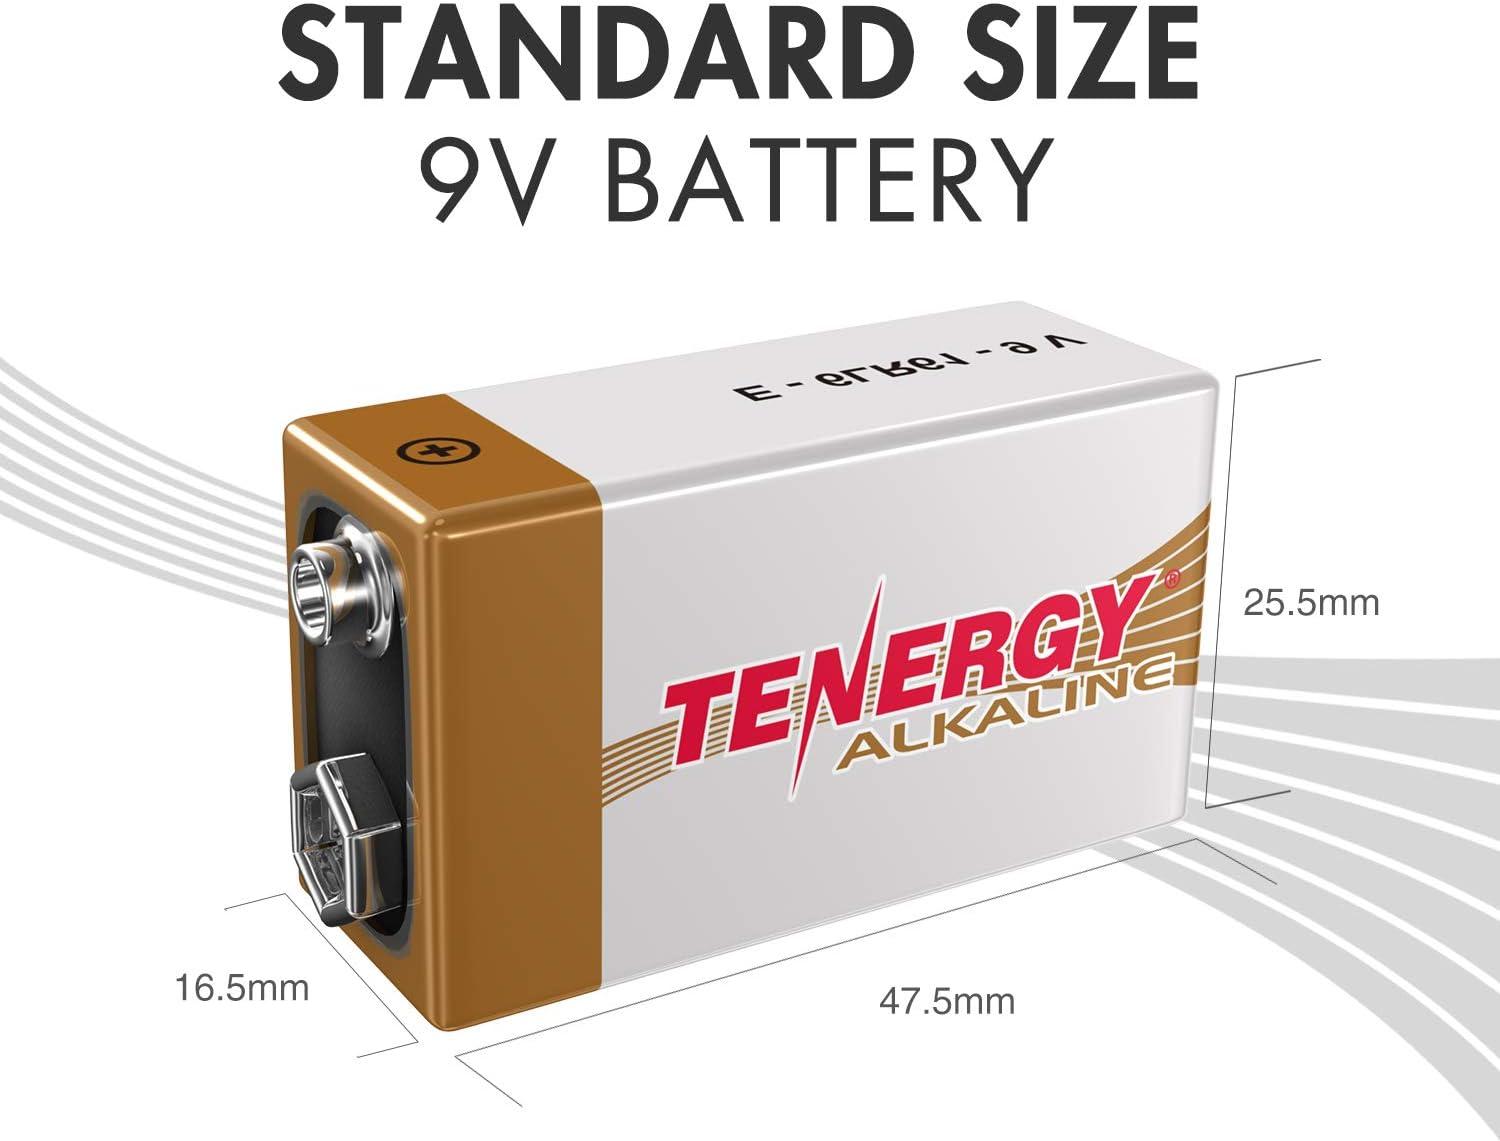 Tenergy 9V (6LR61) Alkaline Batteries, 12pk - Tenergy